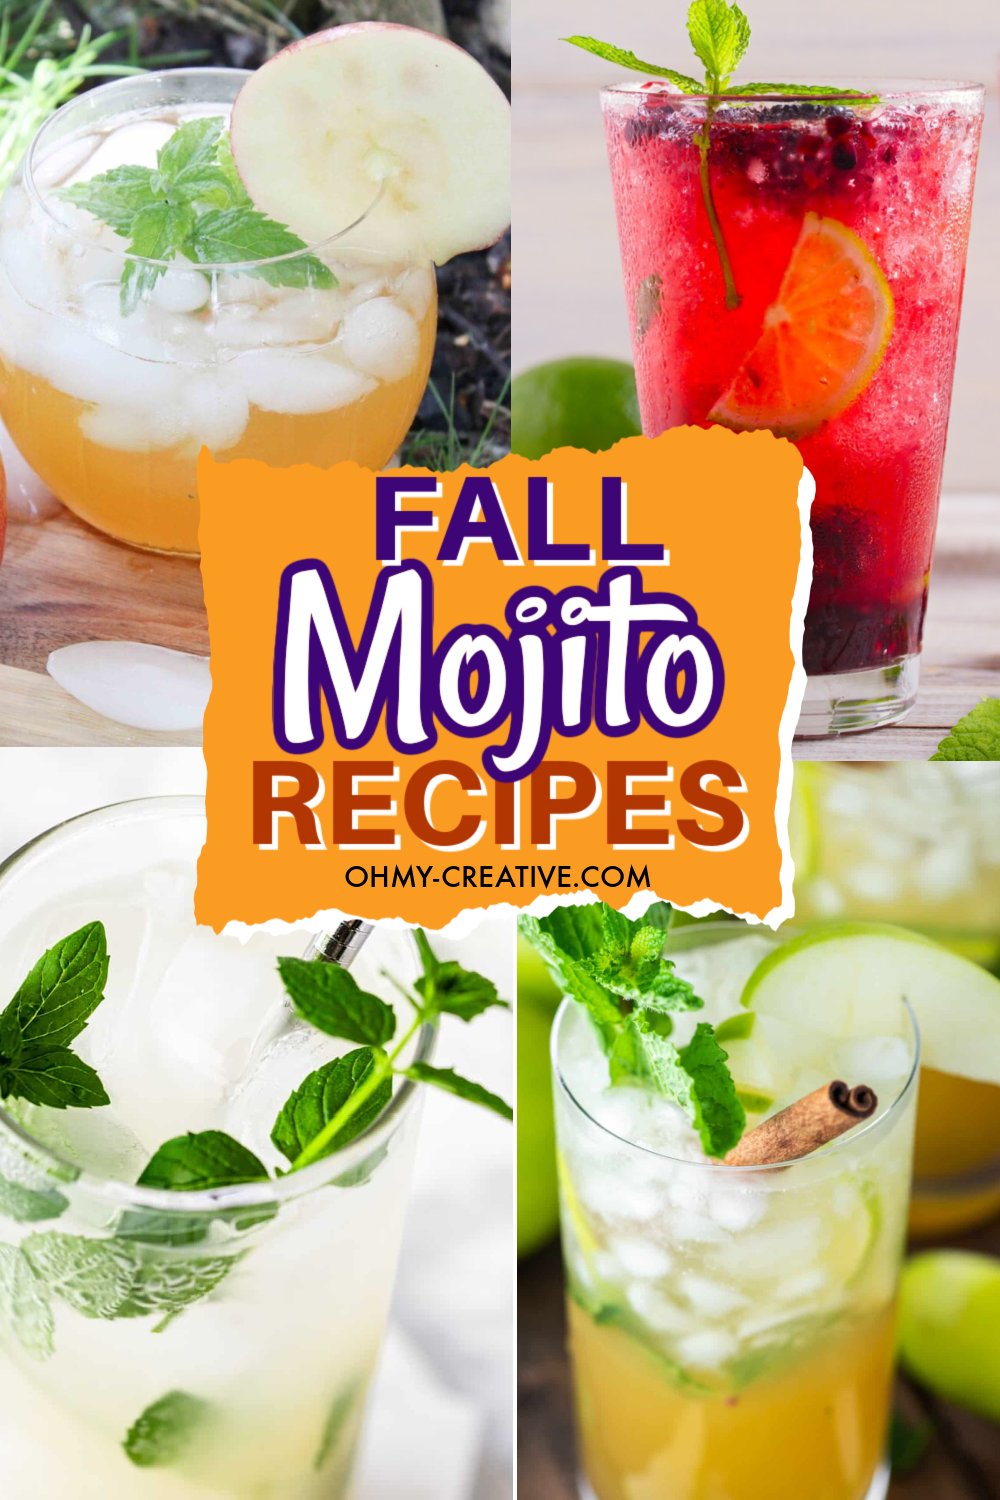 Fall Mojito Recipes